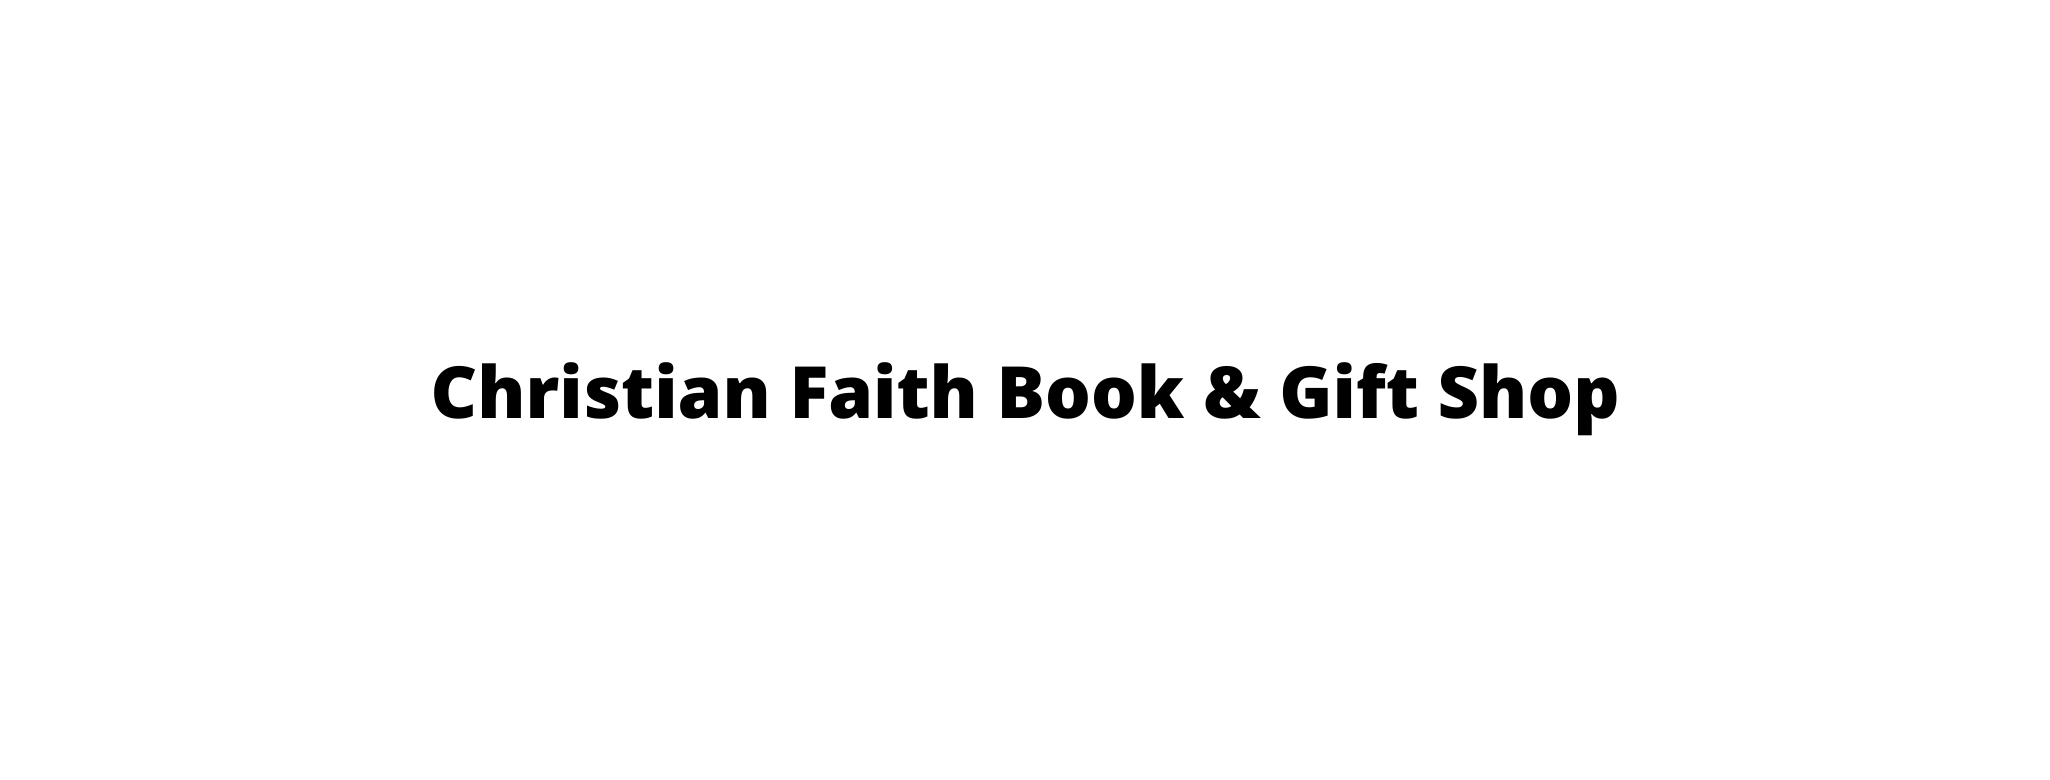 Christian Faith Book & Gift Shop